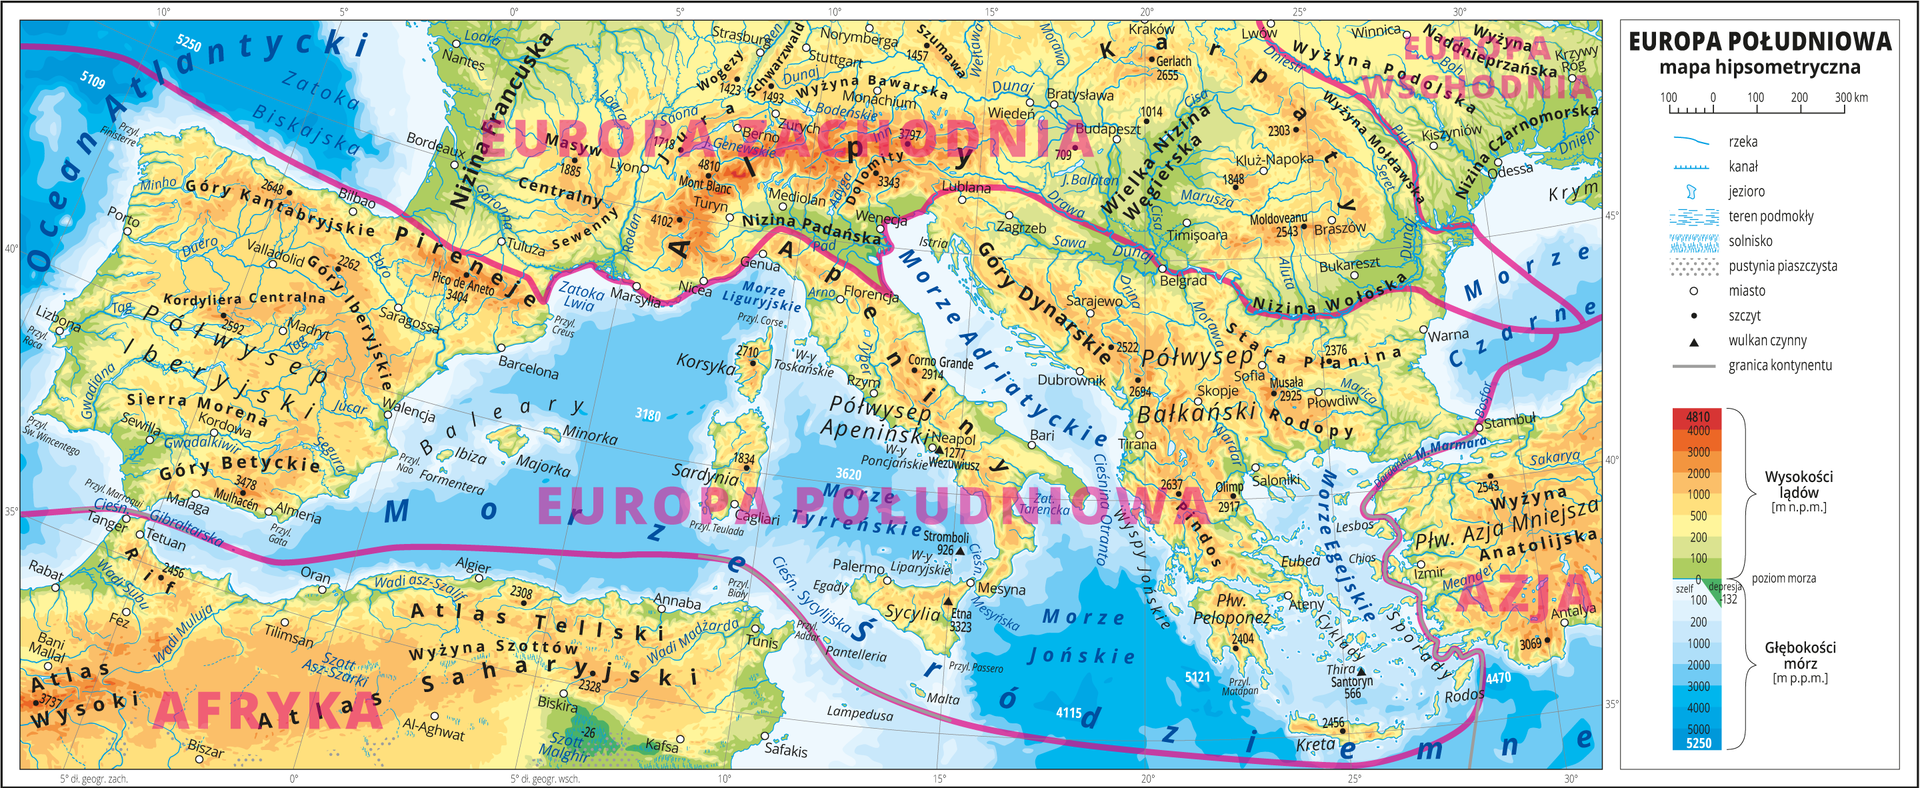 Ilustracja przedstawia mapę hipsometryczną południowej części Europy, północnej części Afryki i fragmentu Azji. W obrębie lądów występują obszary w kolorze zielonym, żółtym, pomarańczowym i czerwonym. Morza zaznaczono kolorem niebieskim. Na mapie opisano nazwy wysp, półwyspów, nizin, wyżyn i pasm górskich, mórz, zatok, rzek i jezior. Oznaczono i opisano główne miasta. Oznaczono czarnymi kropkami i opisano szczyty górskie. Czerwonymi liniami zaznaczono granice między poszczególnymi częściami Europy i opisano ich nazwy. W centralnej części mapy znajduje się Europa Południowa. Mapa pokryta jest równoleżnikami i południkami. Dookoła mapy w białej ramce opisano współrzędne geograficzne co pięć stopni. W legendzie przedstawiono i opisano znaki użyte na mapie.